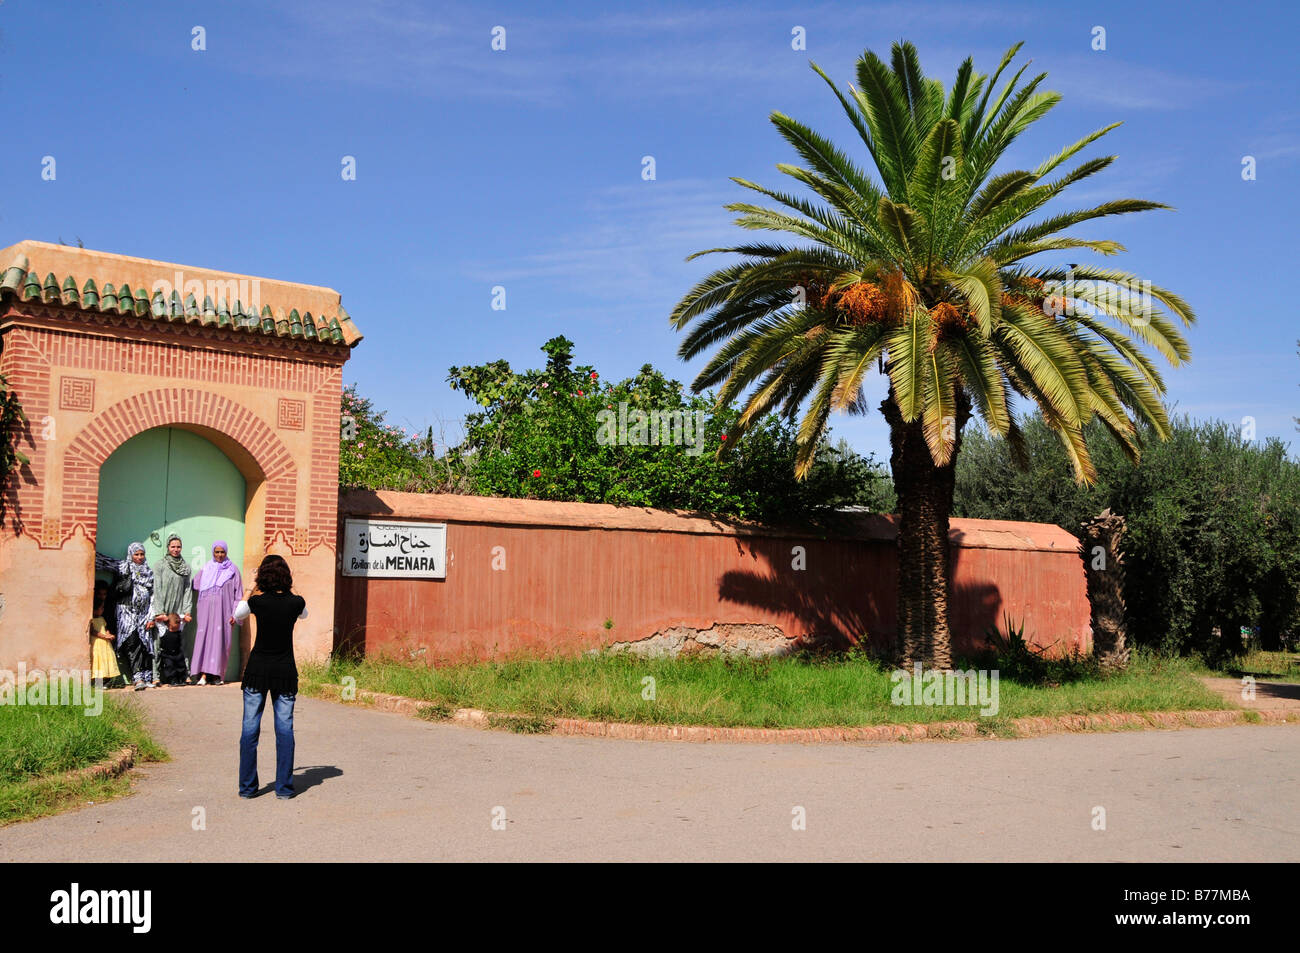 Des photos de la famille marocaine à l'entrée de l'Saadier-Palais dans les jardins de la Menara, Marrakech, Maroc, Afrique Banque D'Images